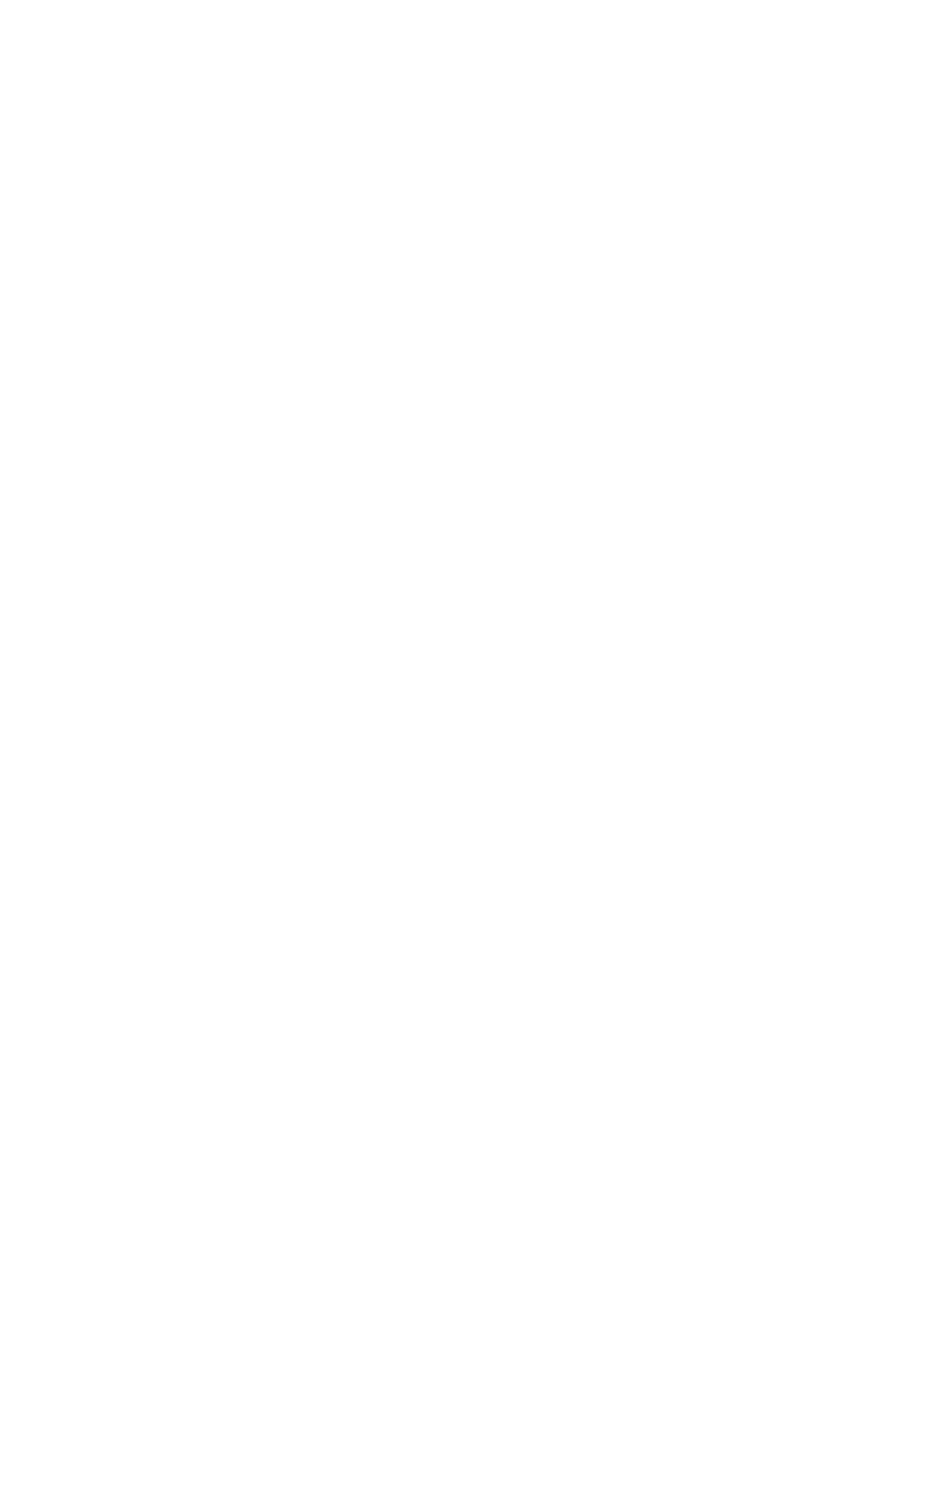 Aristocrat logo pour fonds sombres (PNG transparent)